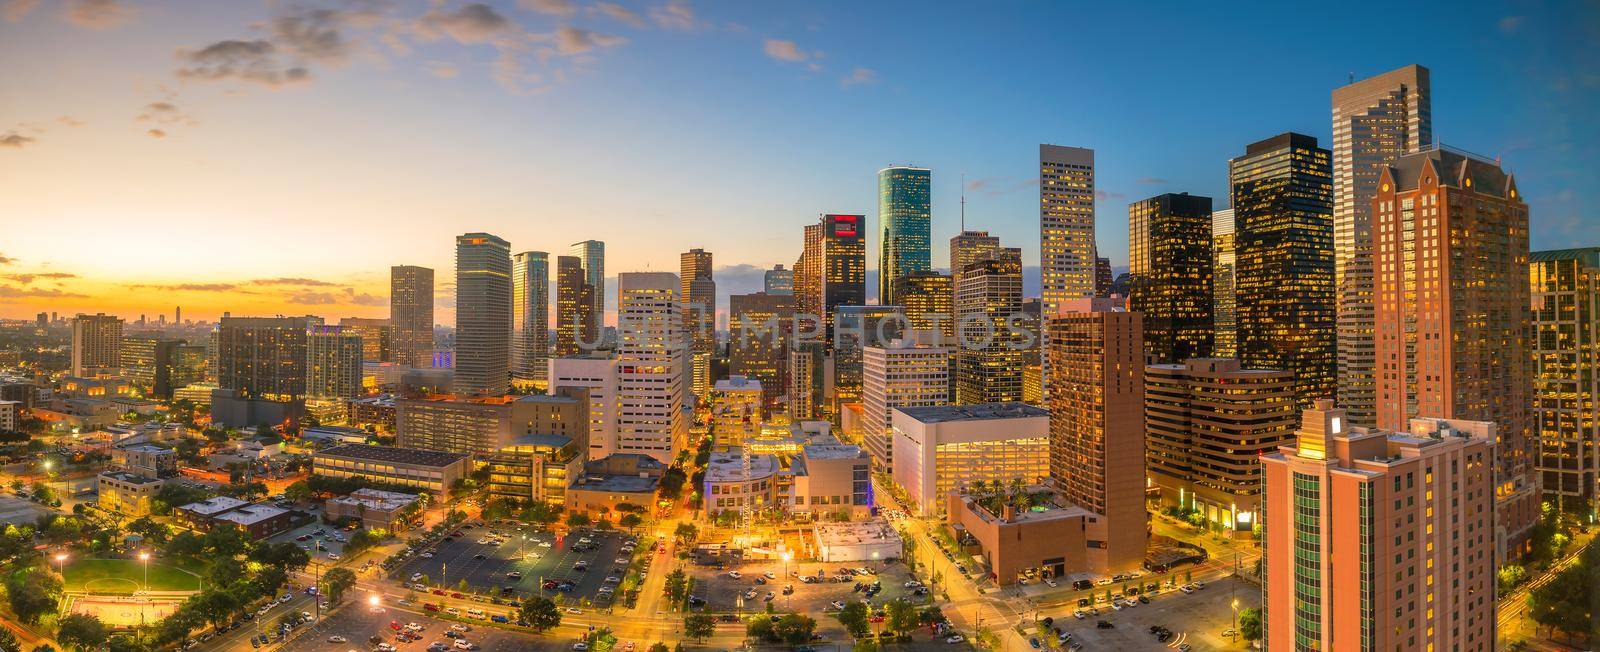 Downtown Houston skyline by f11photo